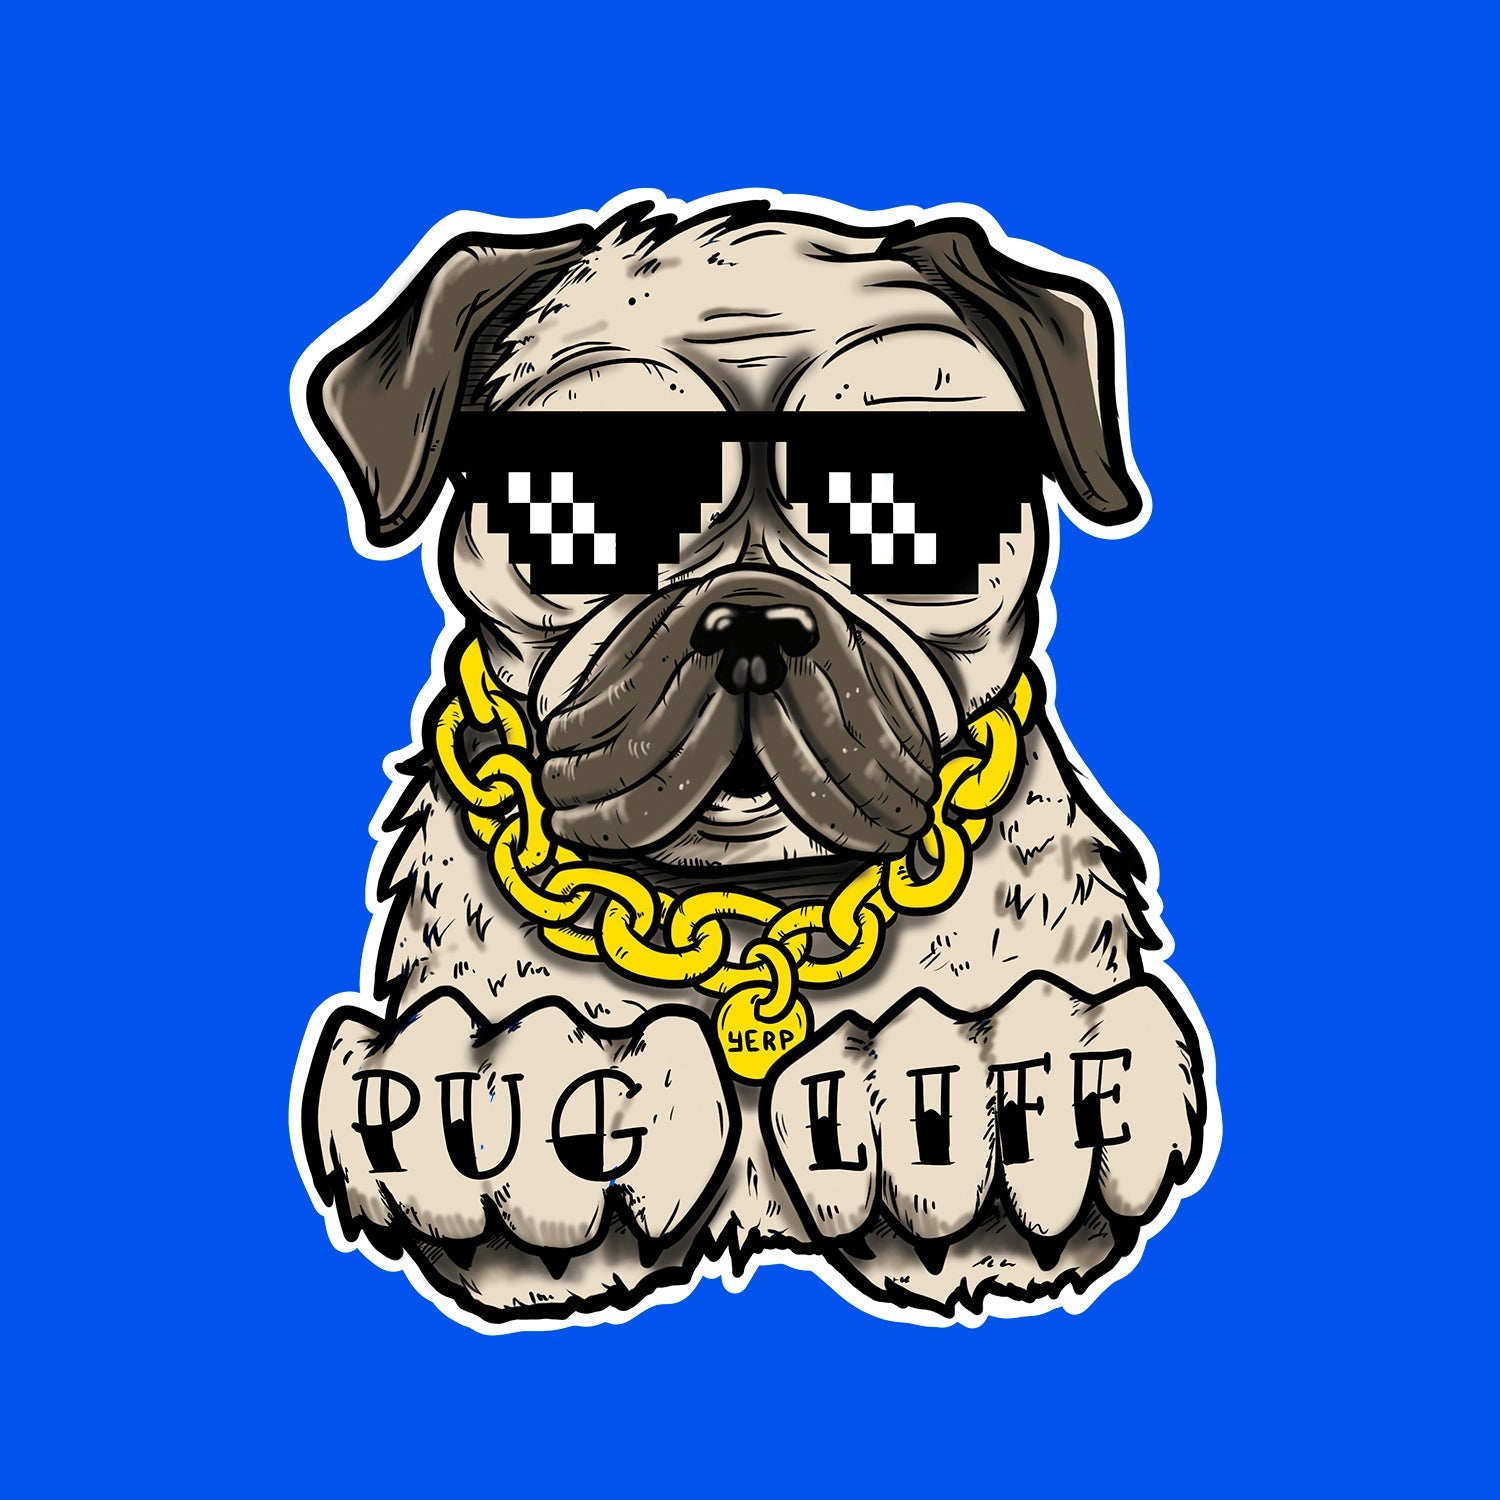 Pug Life T Shirt